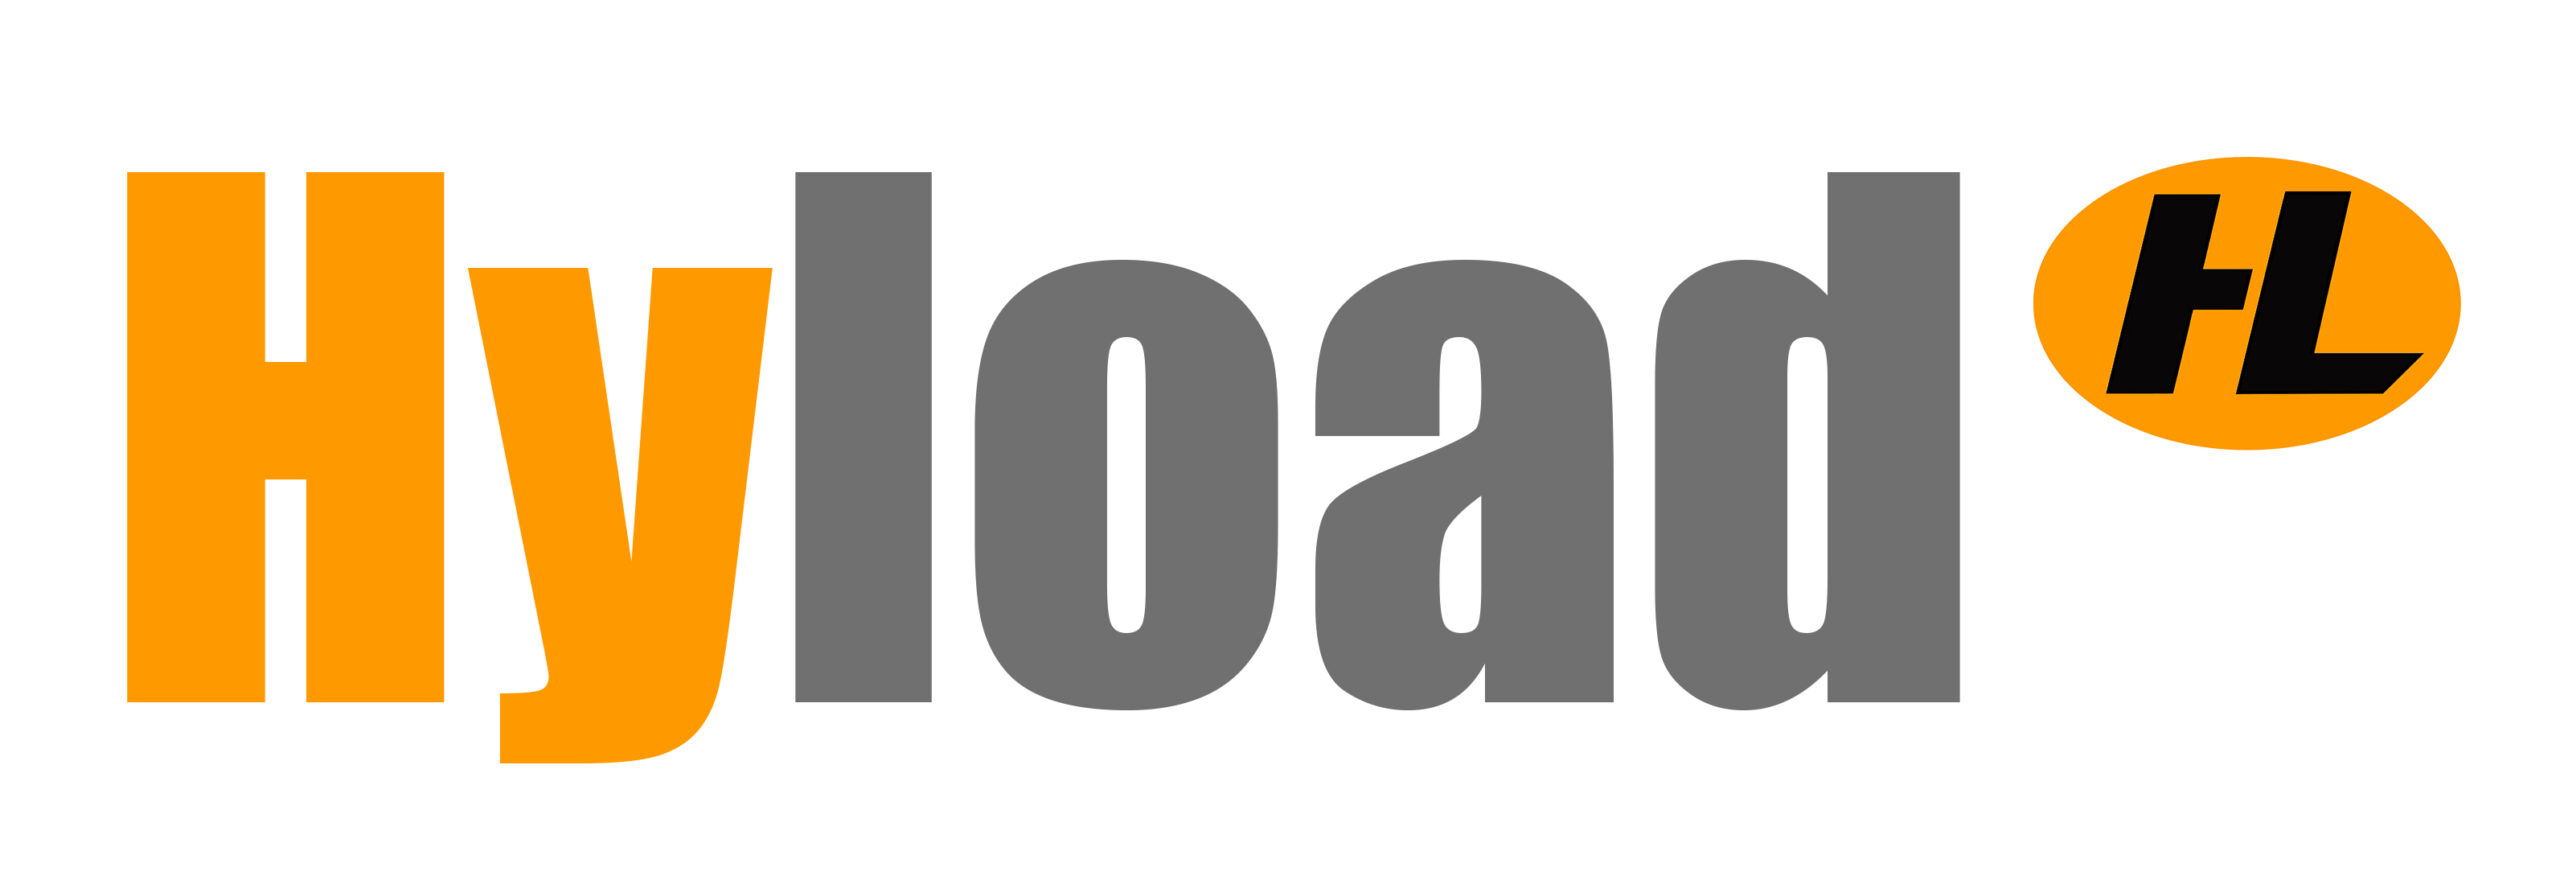 Hyload Mini Dumpers and Backhoe Loaders Logo